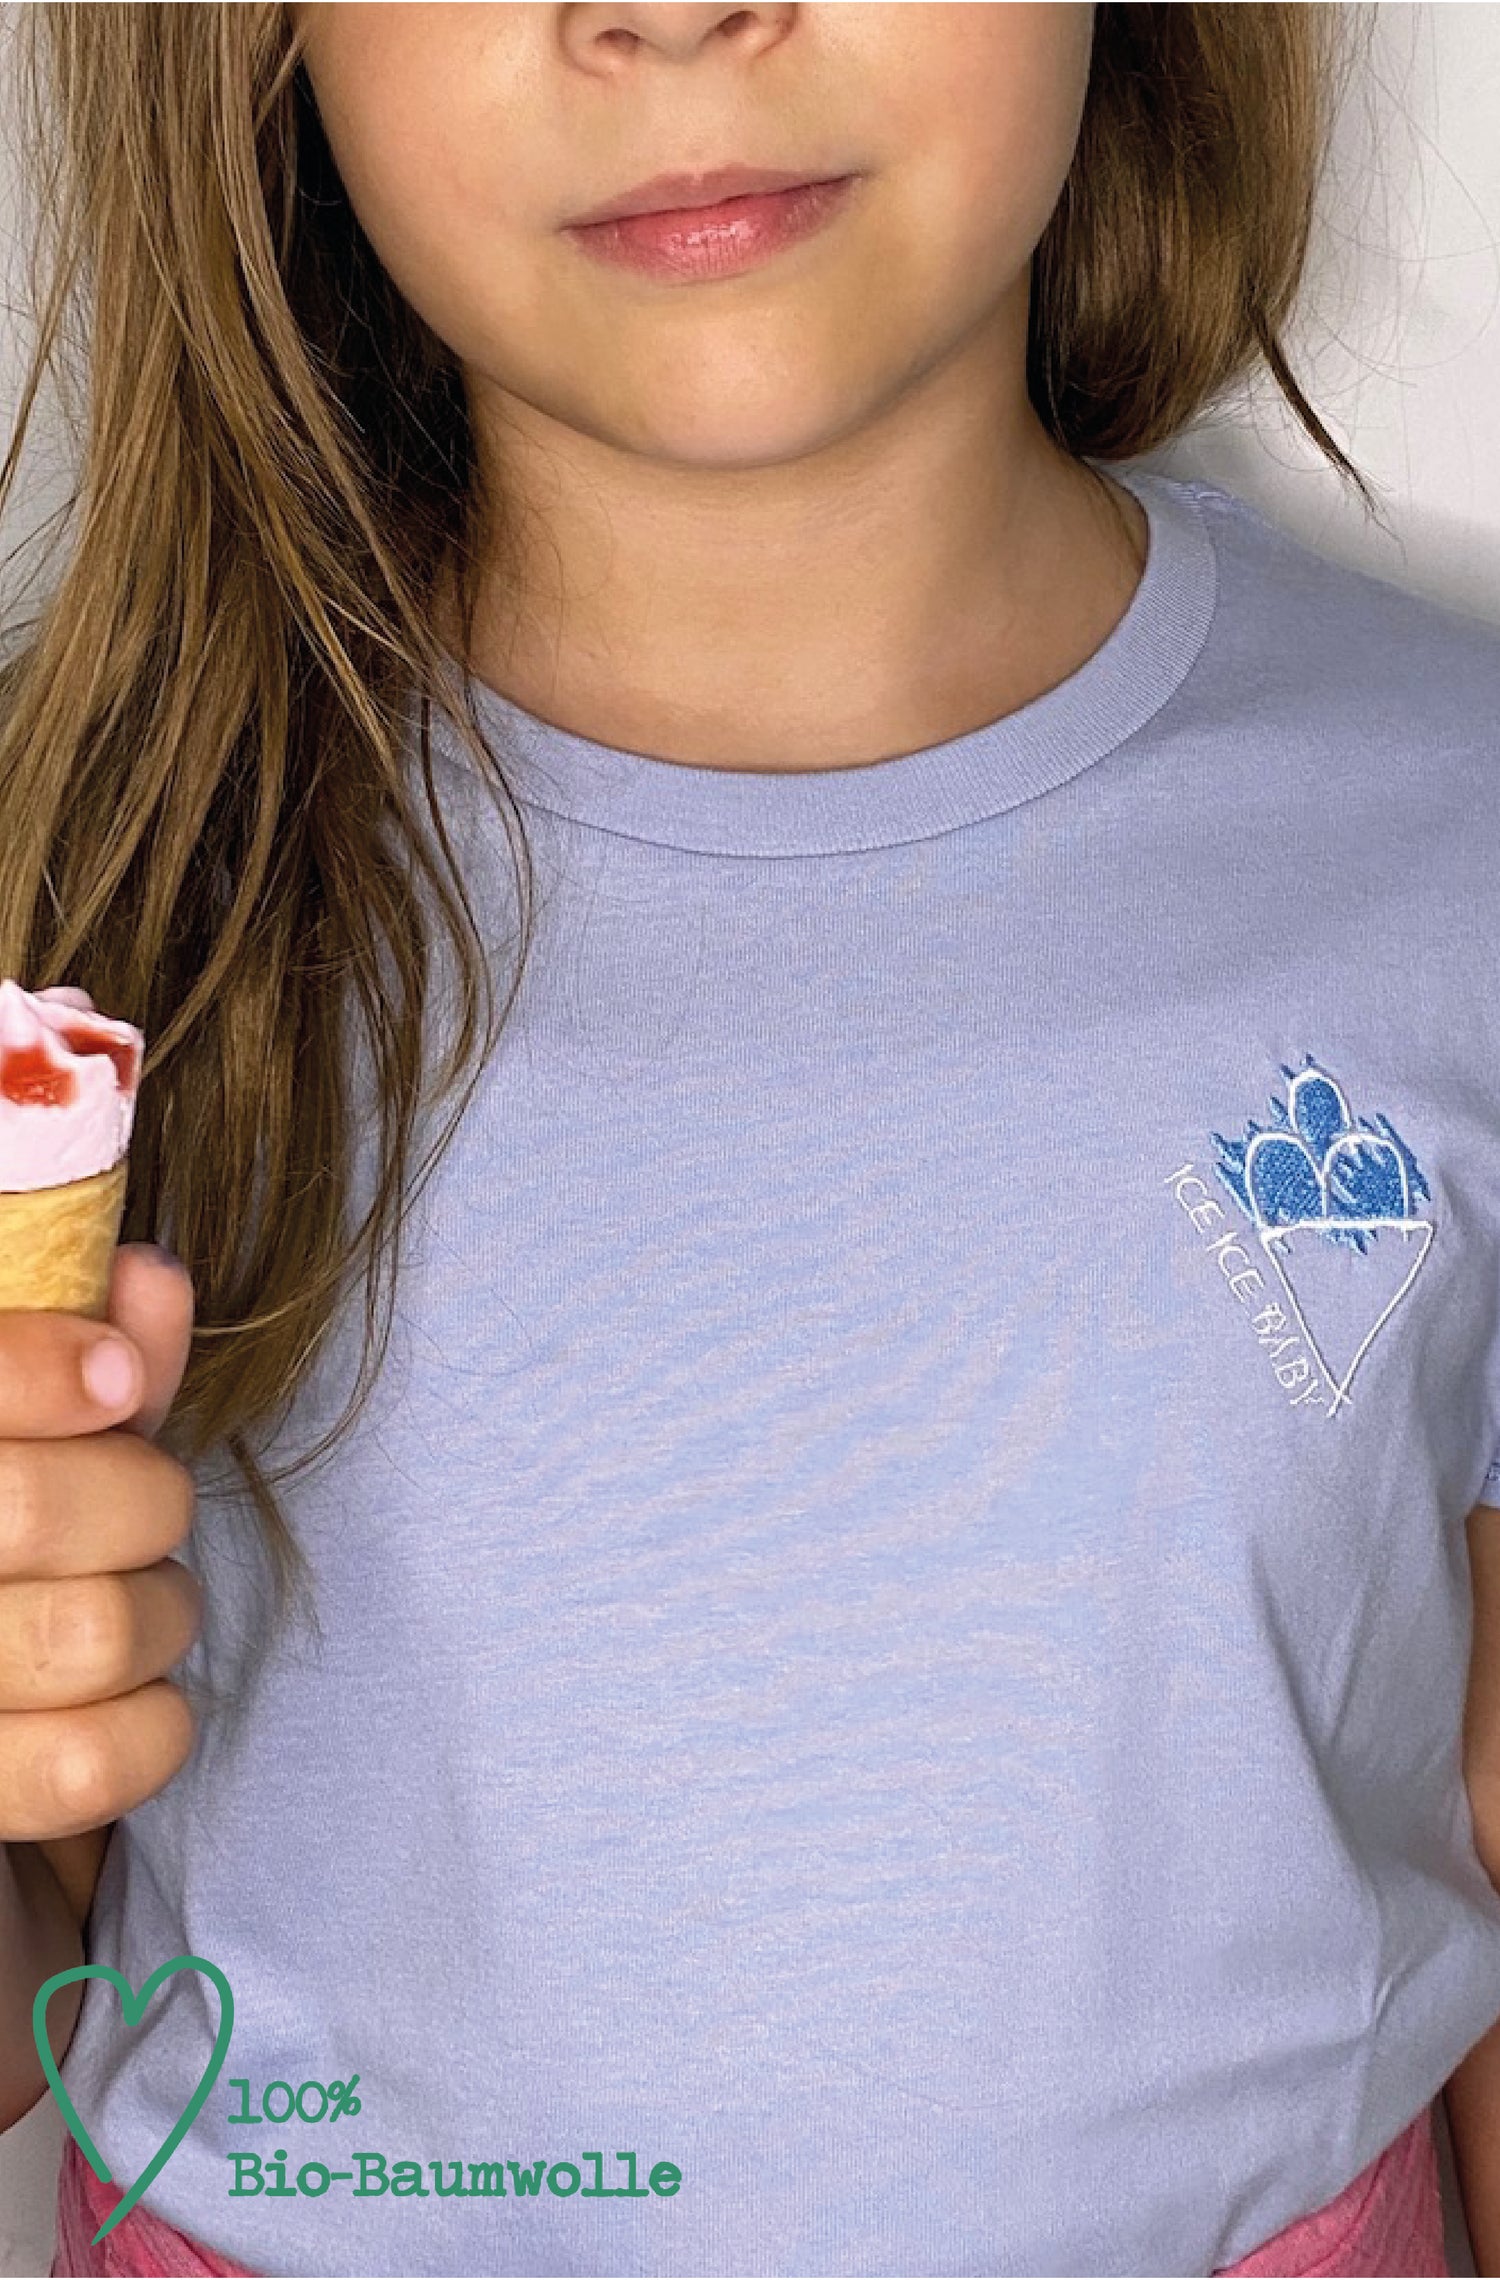 4littlearts T-Shirt 'Ice ice baby' für Kinder, aus Biobaumwolle, mit einzigartiger Stickerei, nachhaltige Mode 